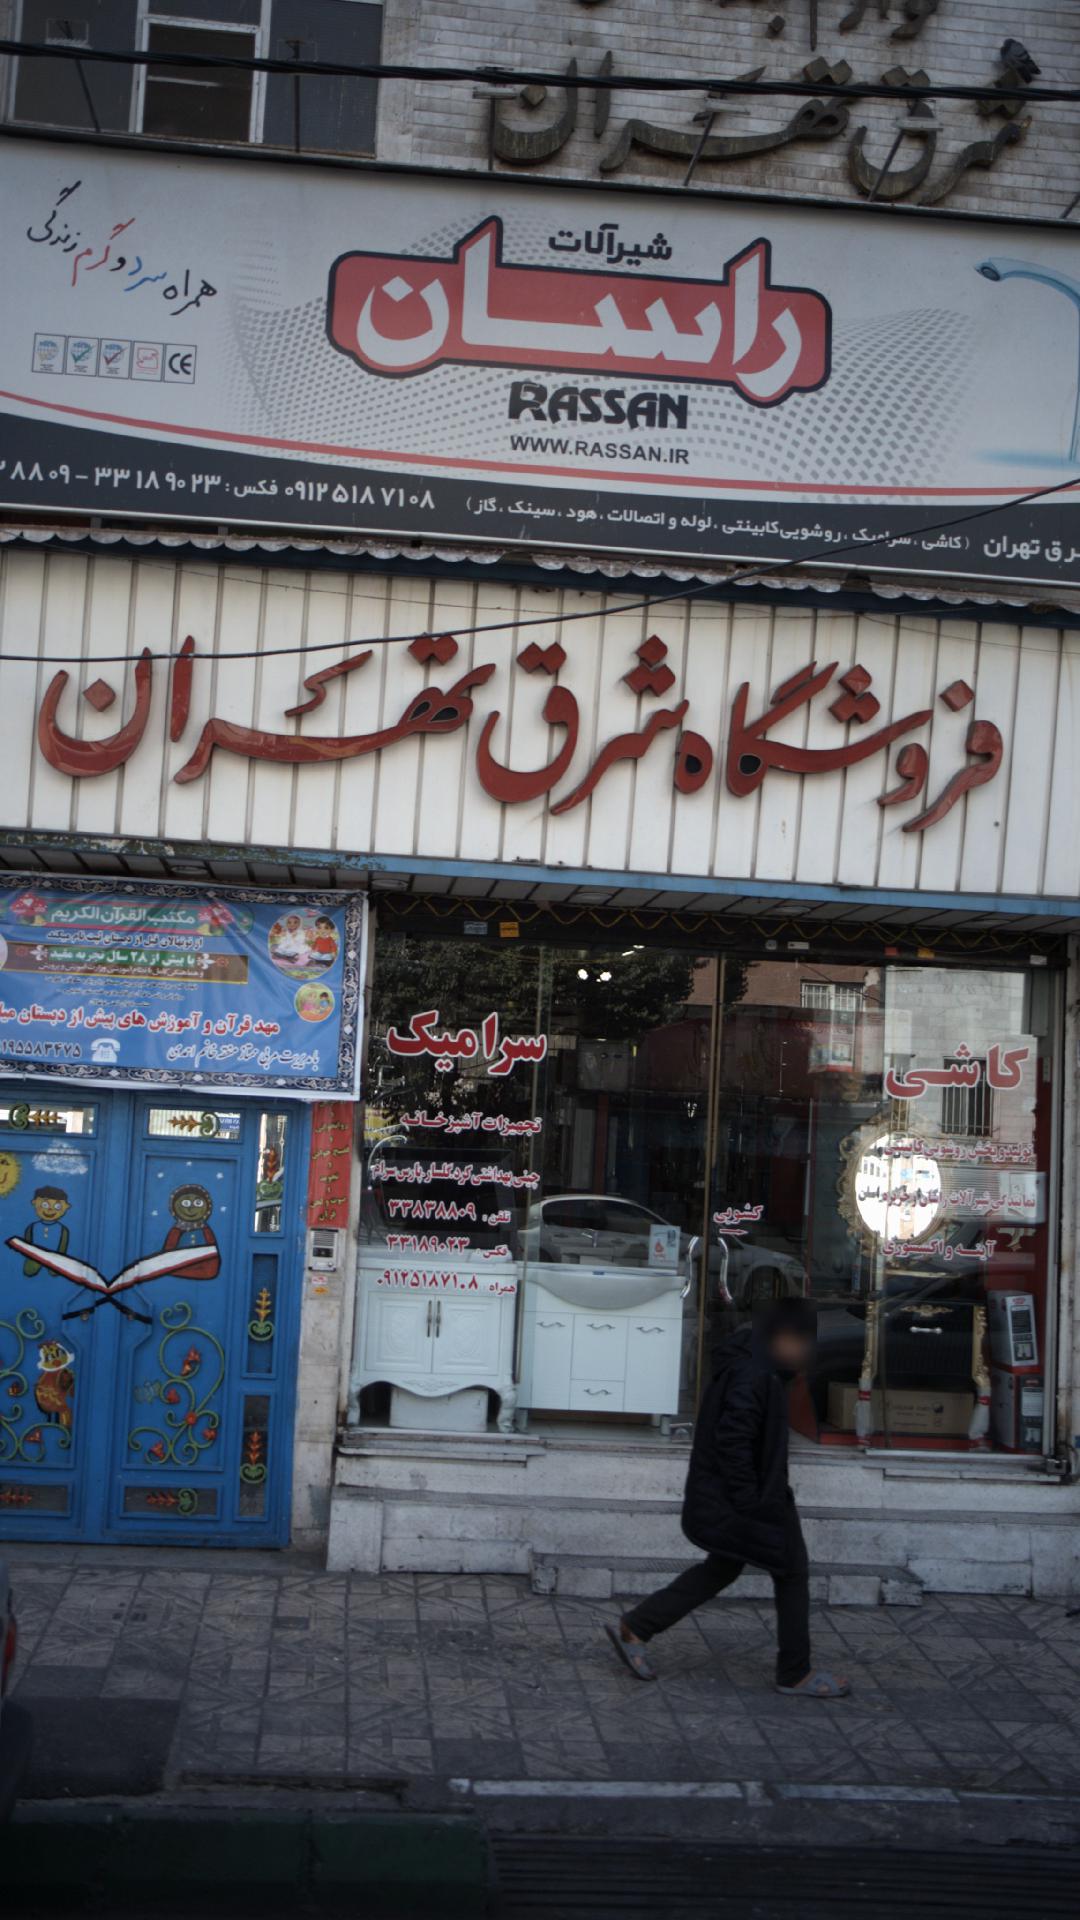 فروشگاه شرق تهران